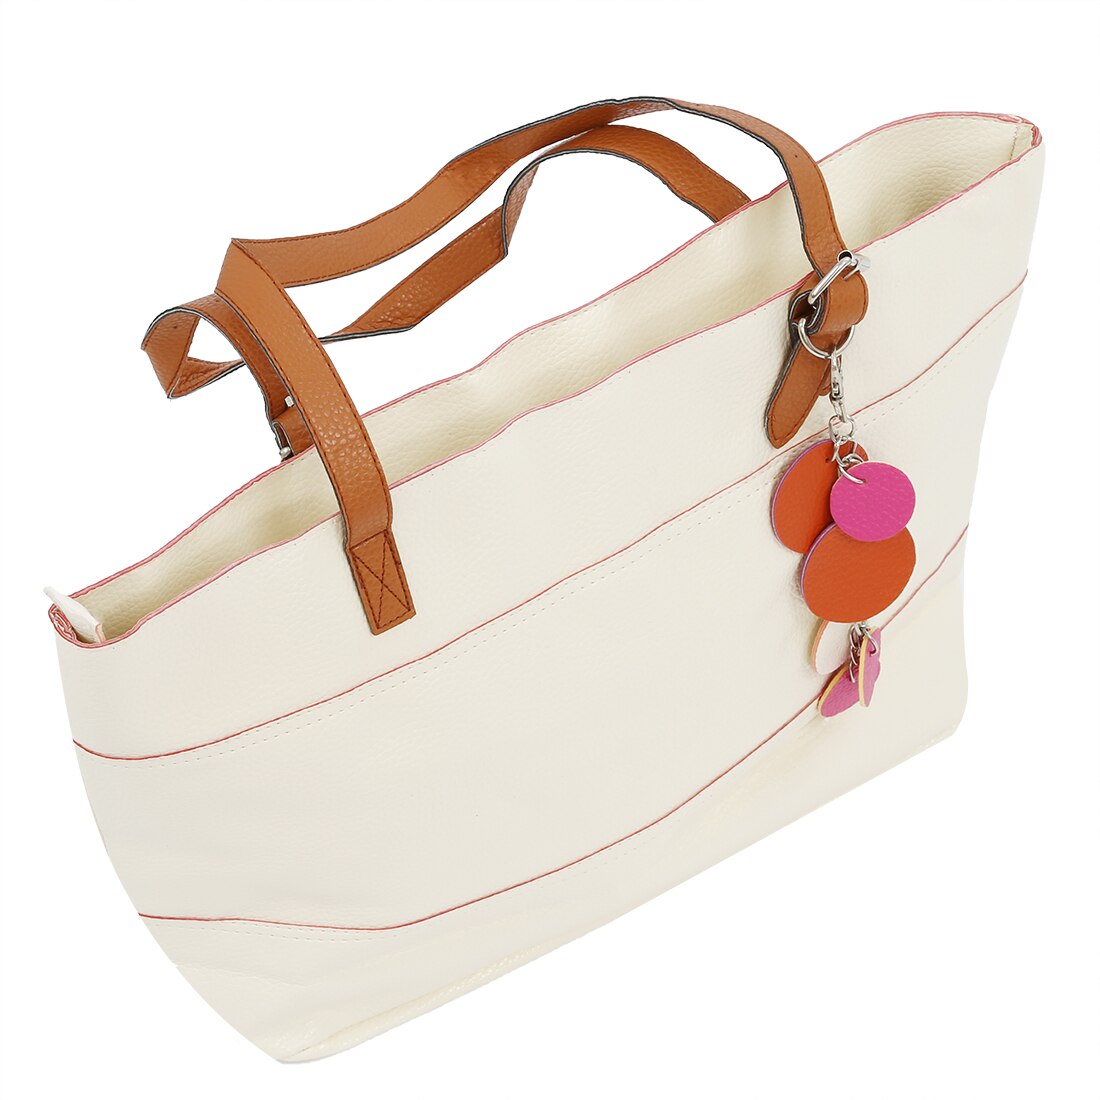 Sweet-Color Women girls Satchel Handbag Shoulder Tote Bag Lady Bag Shopper beige - ebowsos